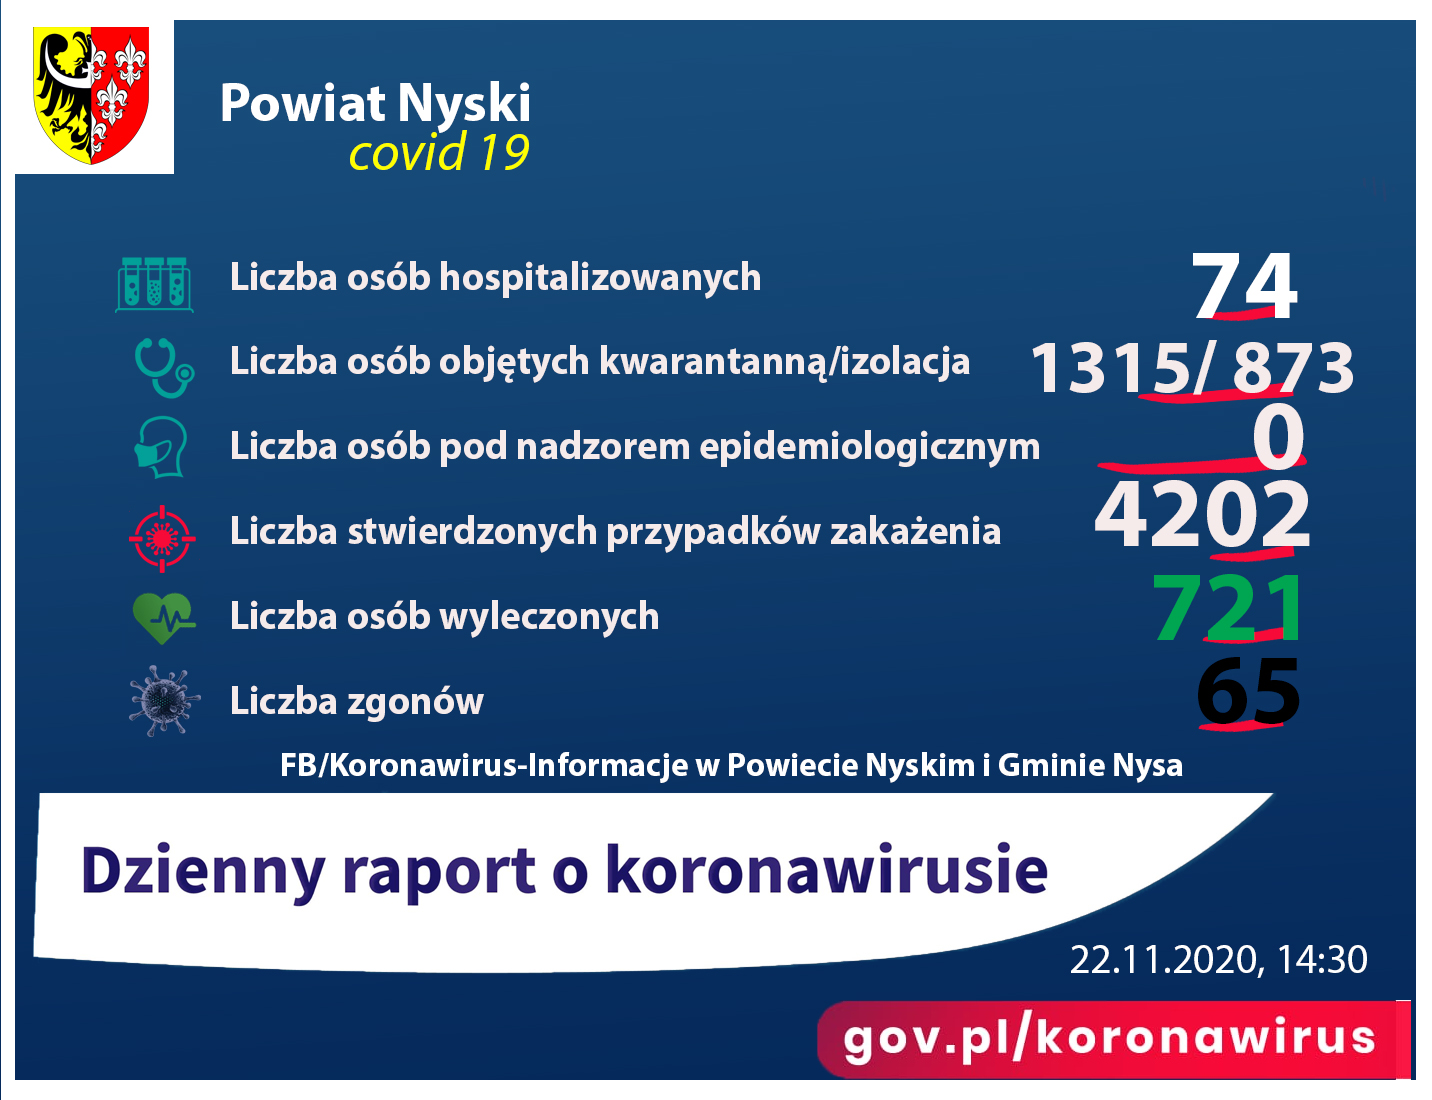 Liczba osób zakażonych 4202, hospitalizowanych - 74, ozdrowieńców - 721, zgonów 65